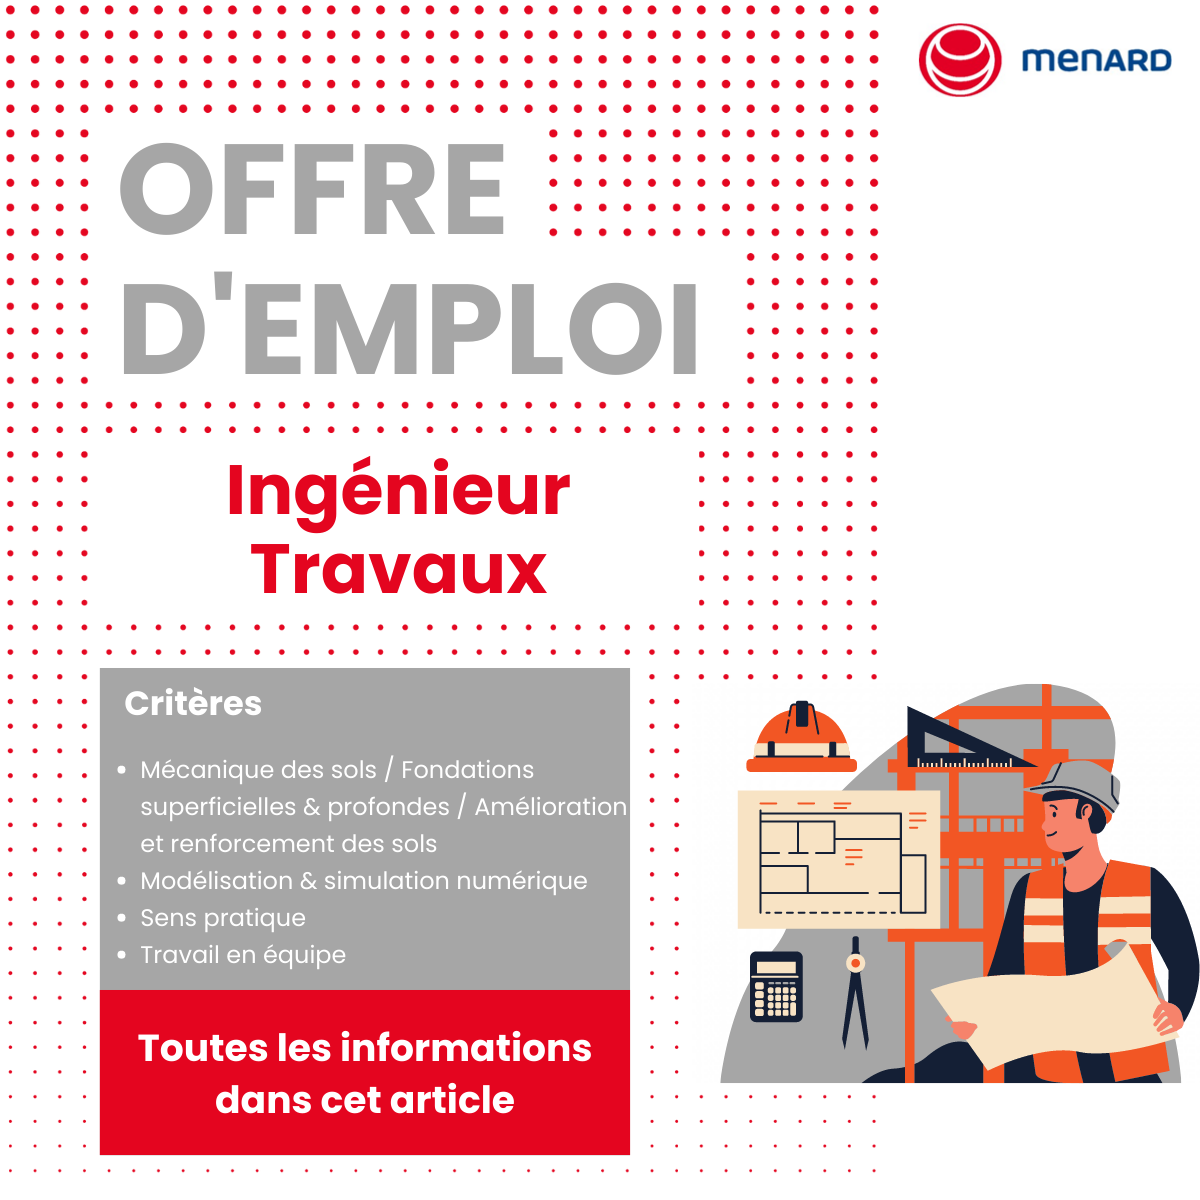 Visuel de promotion d'une offre d'emploi en vue du recrutement d'un ingénieur travaux à Marseille.